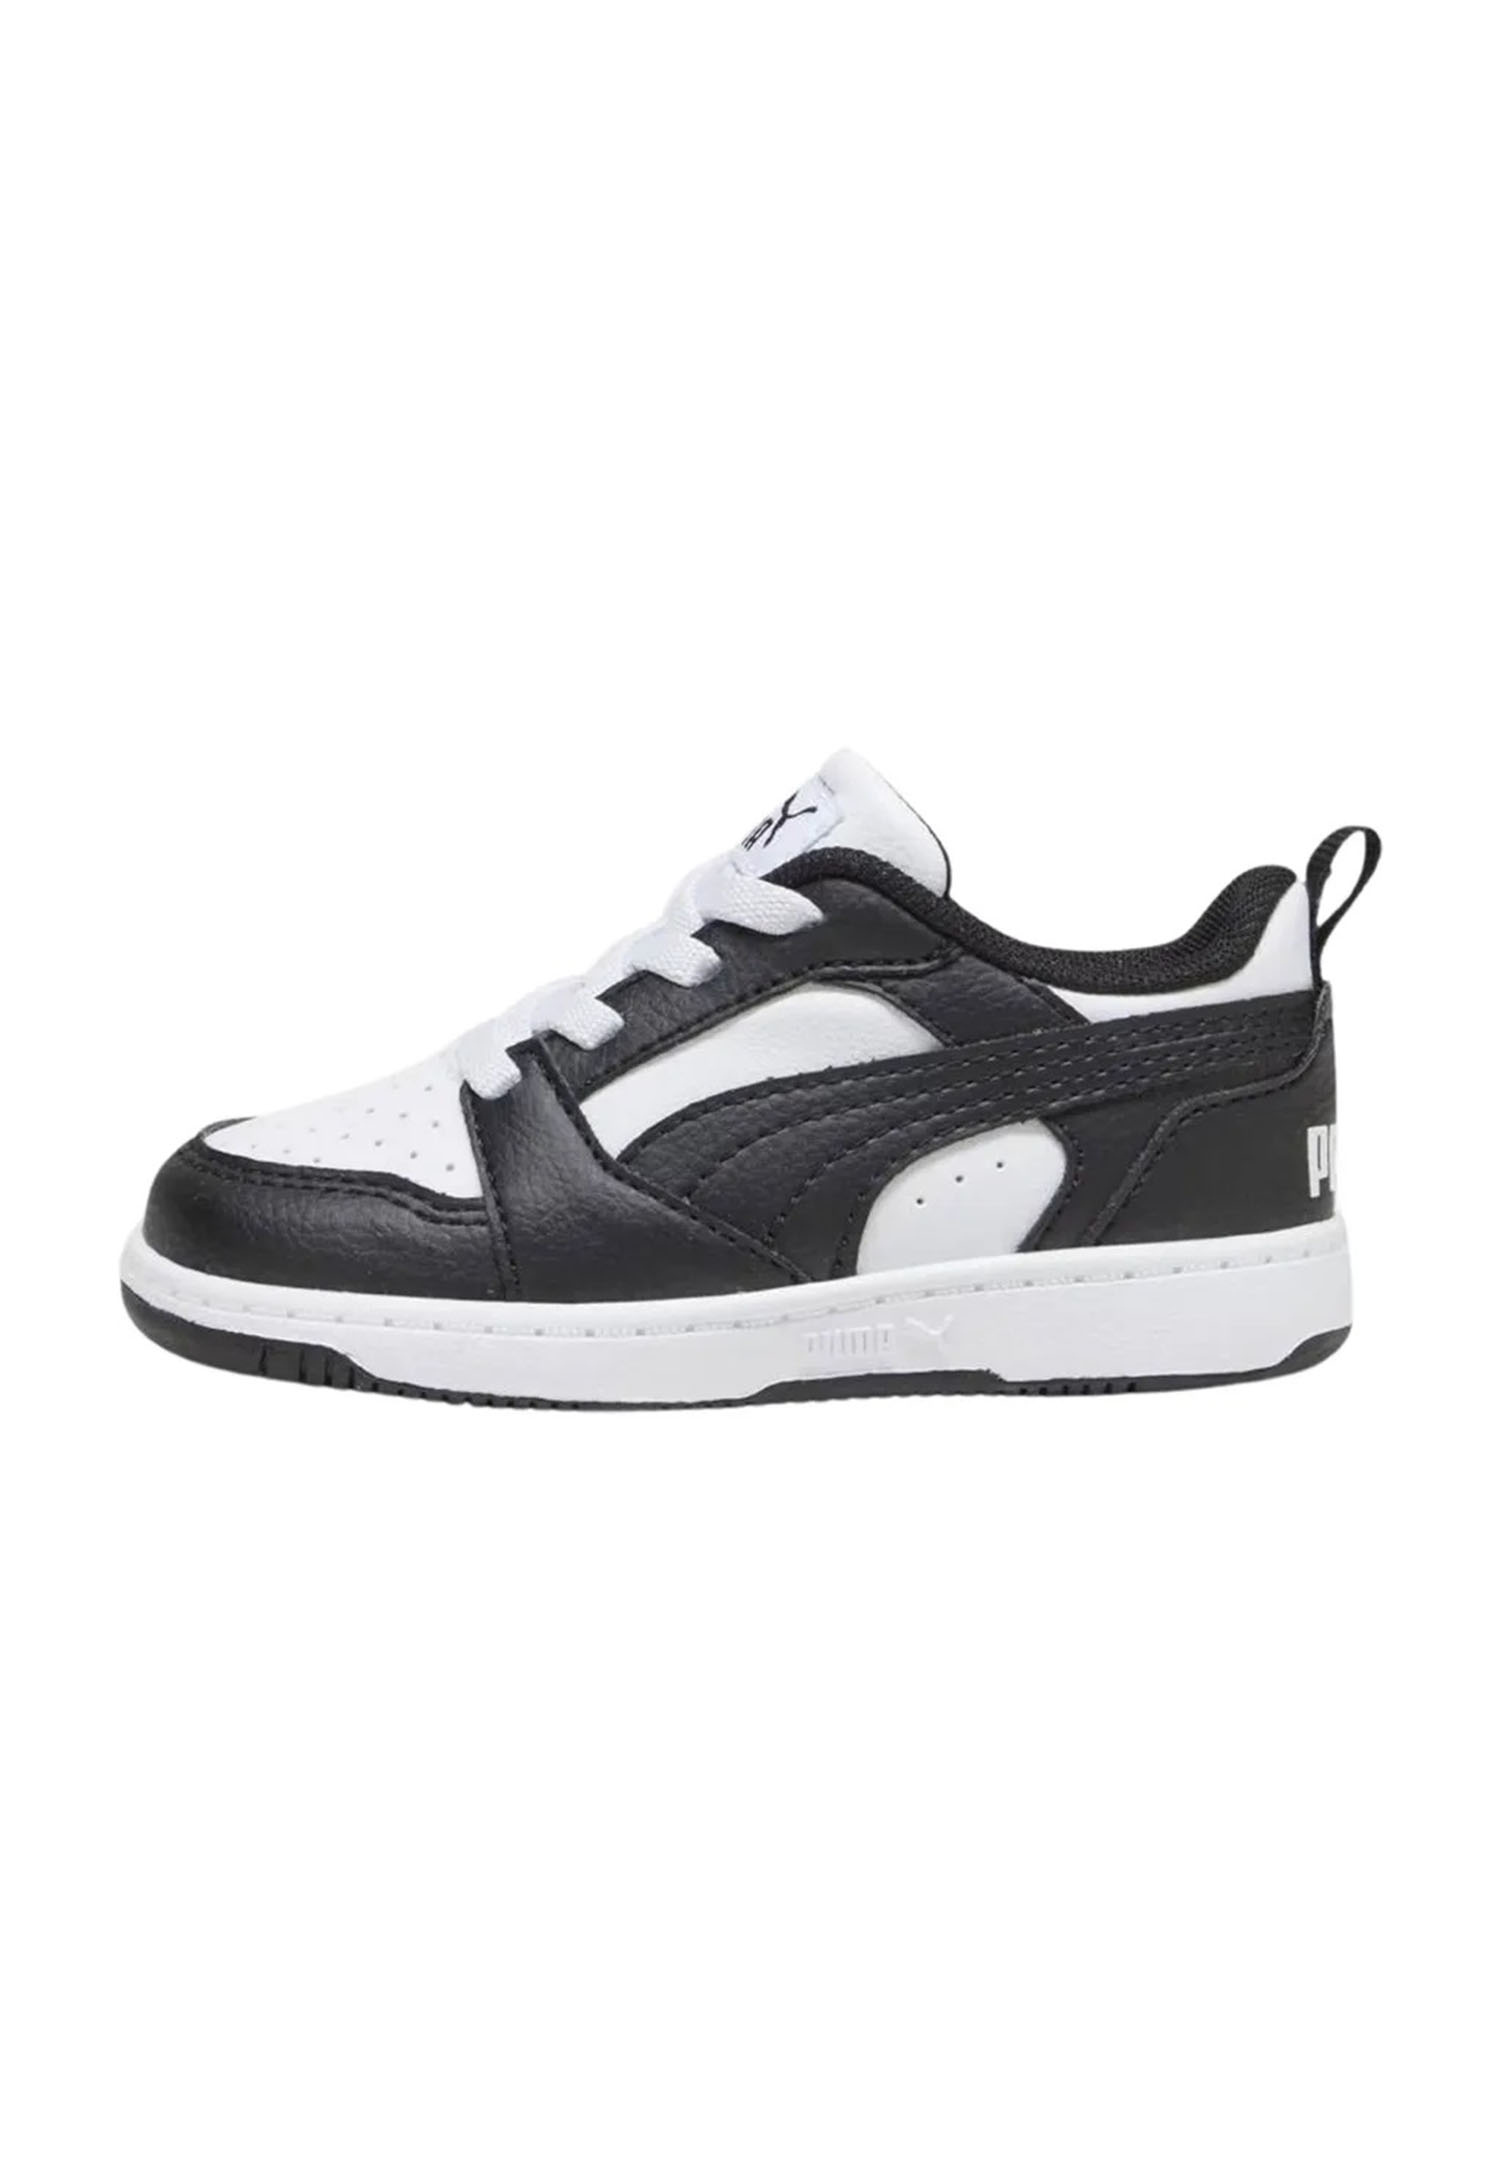 Puma Rebound V6 Lo AC PS Unisex Kinder Sneaker 396742 01 weiß/schwarz